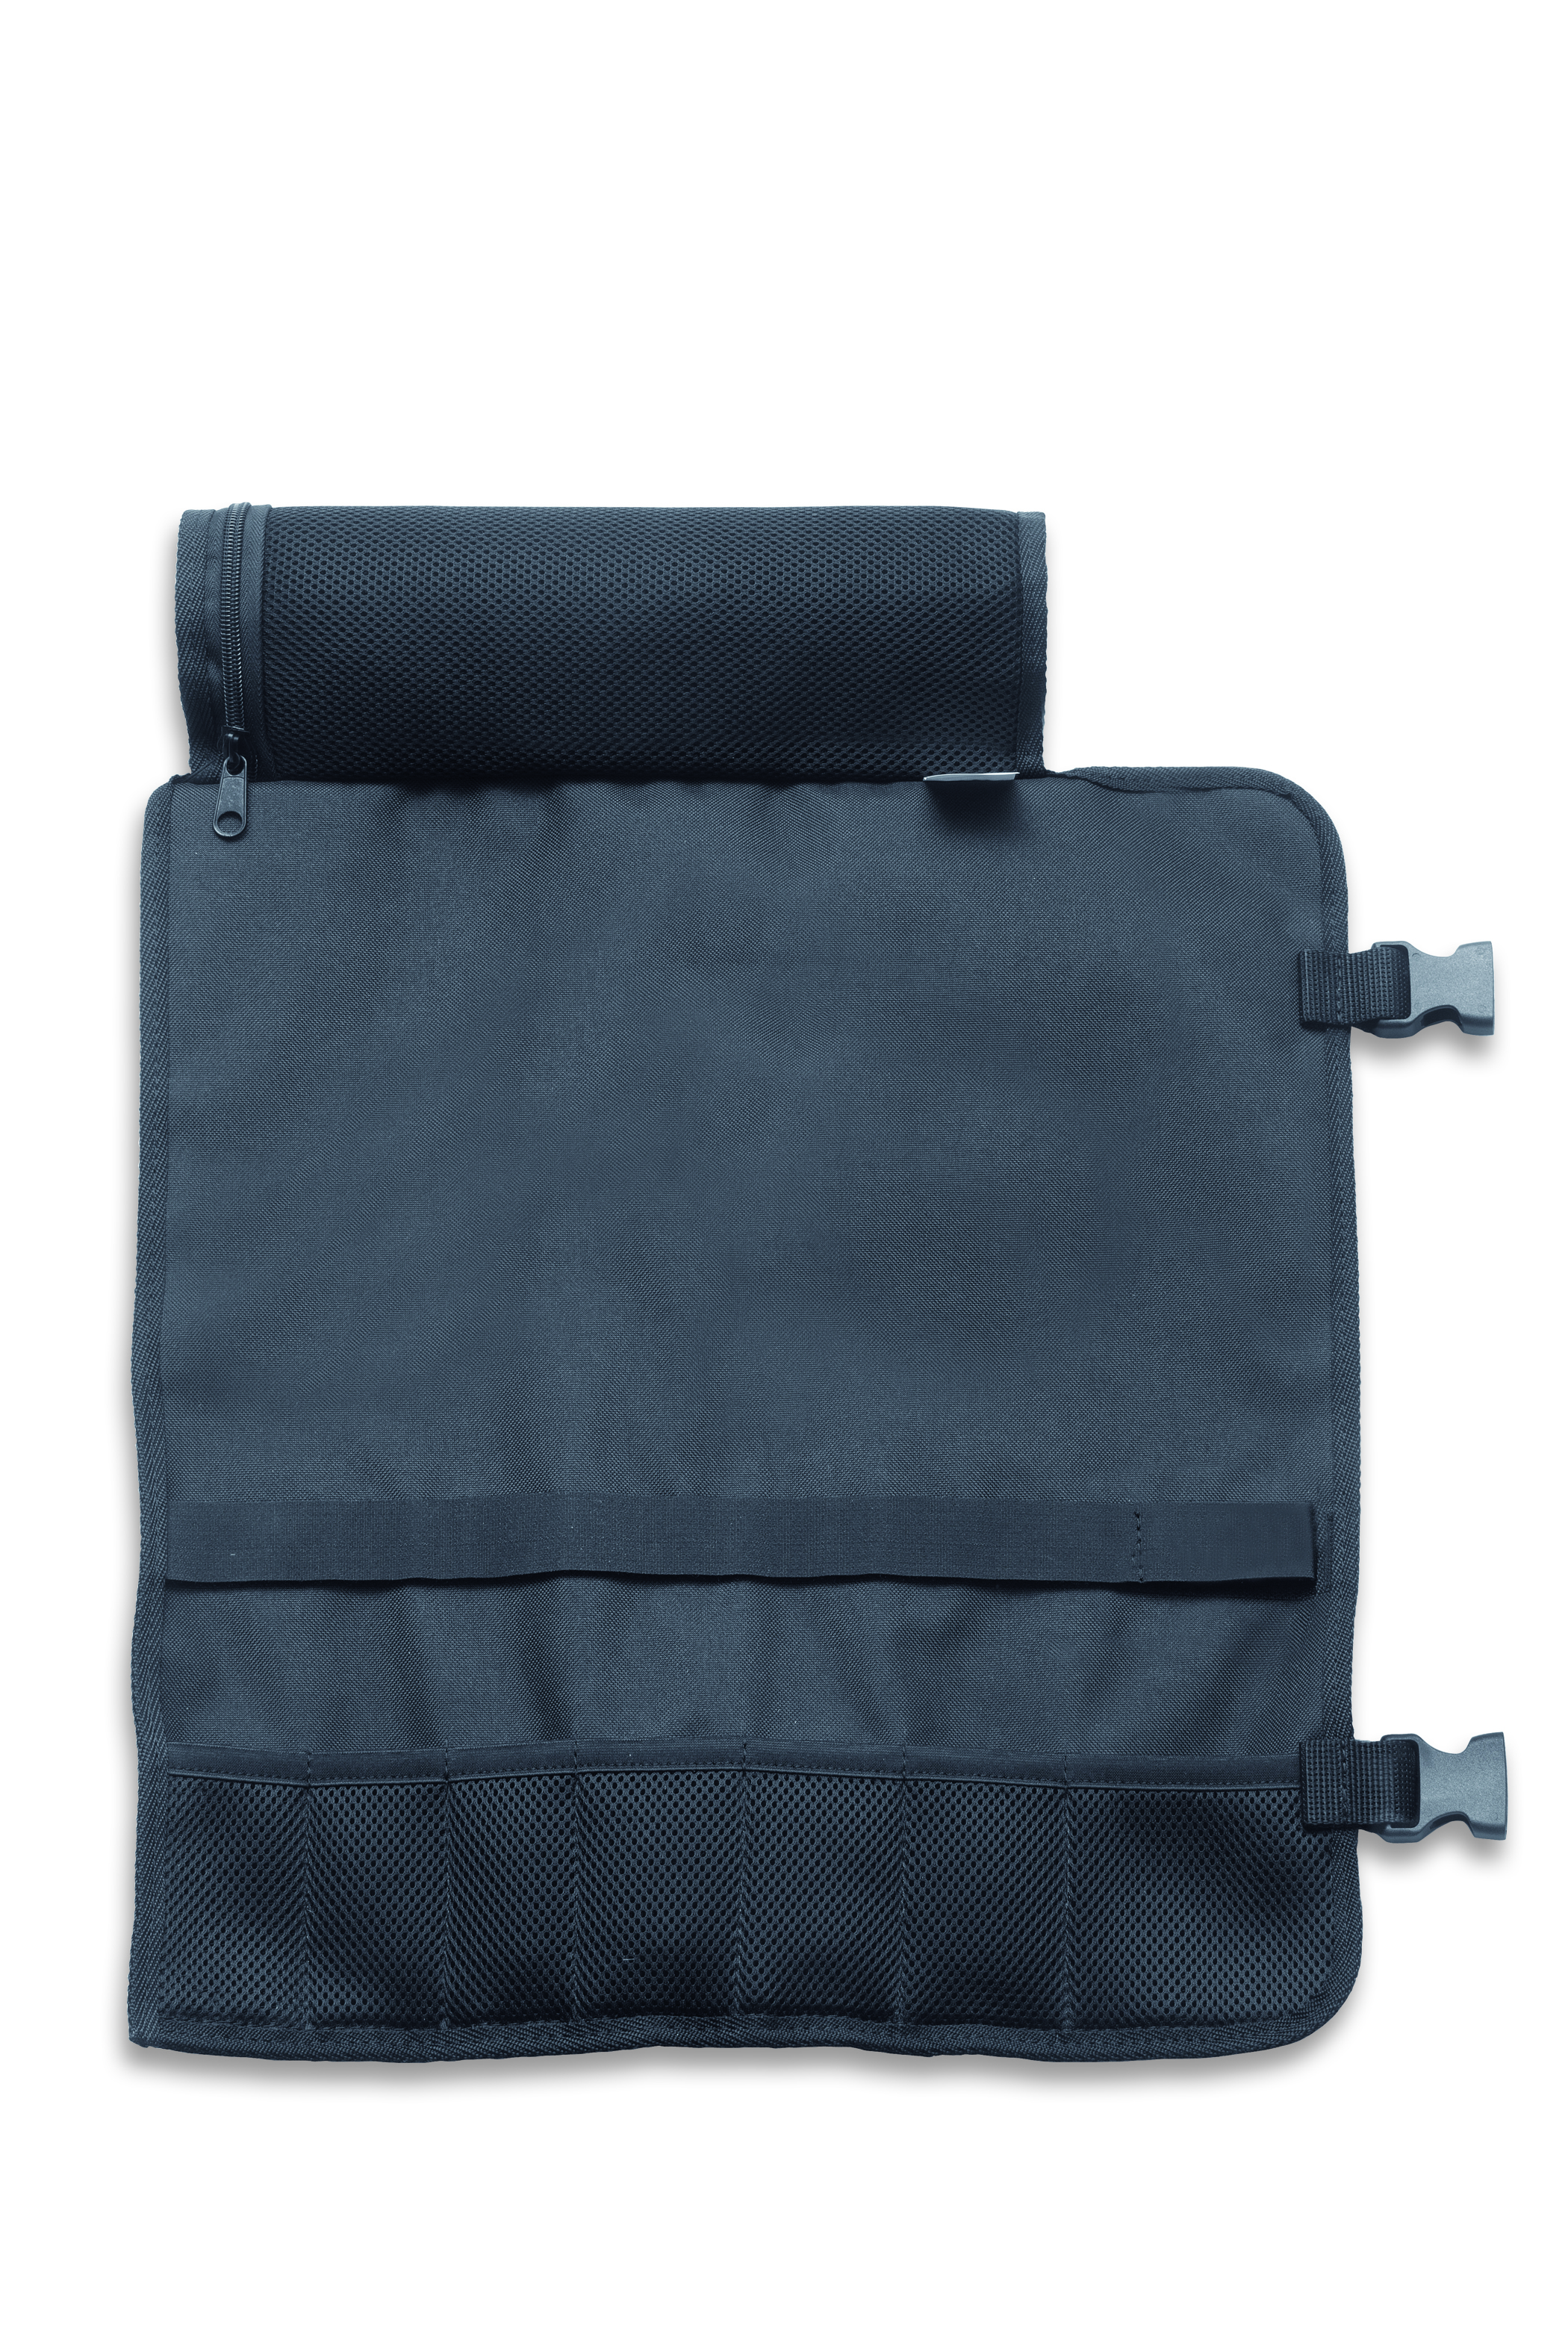 Textil-Rolltasche, 7-teilig, ohne Bestückung (81076010)